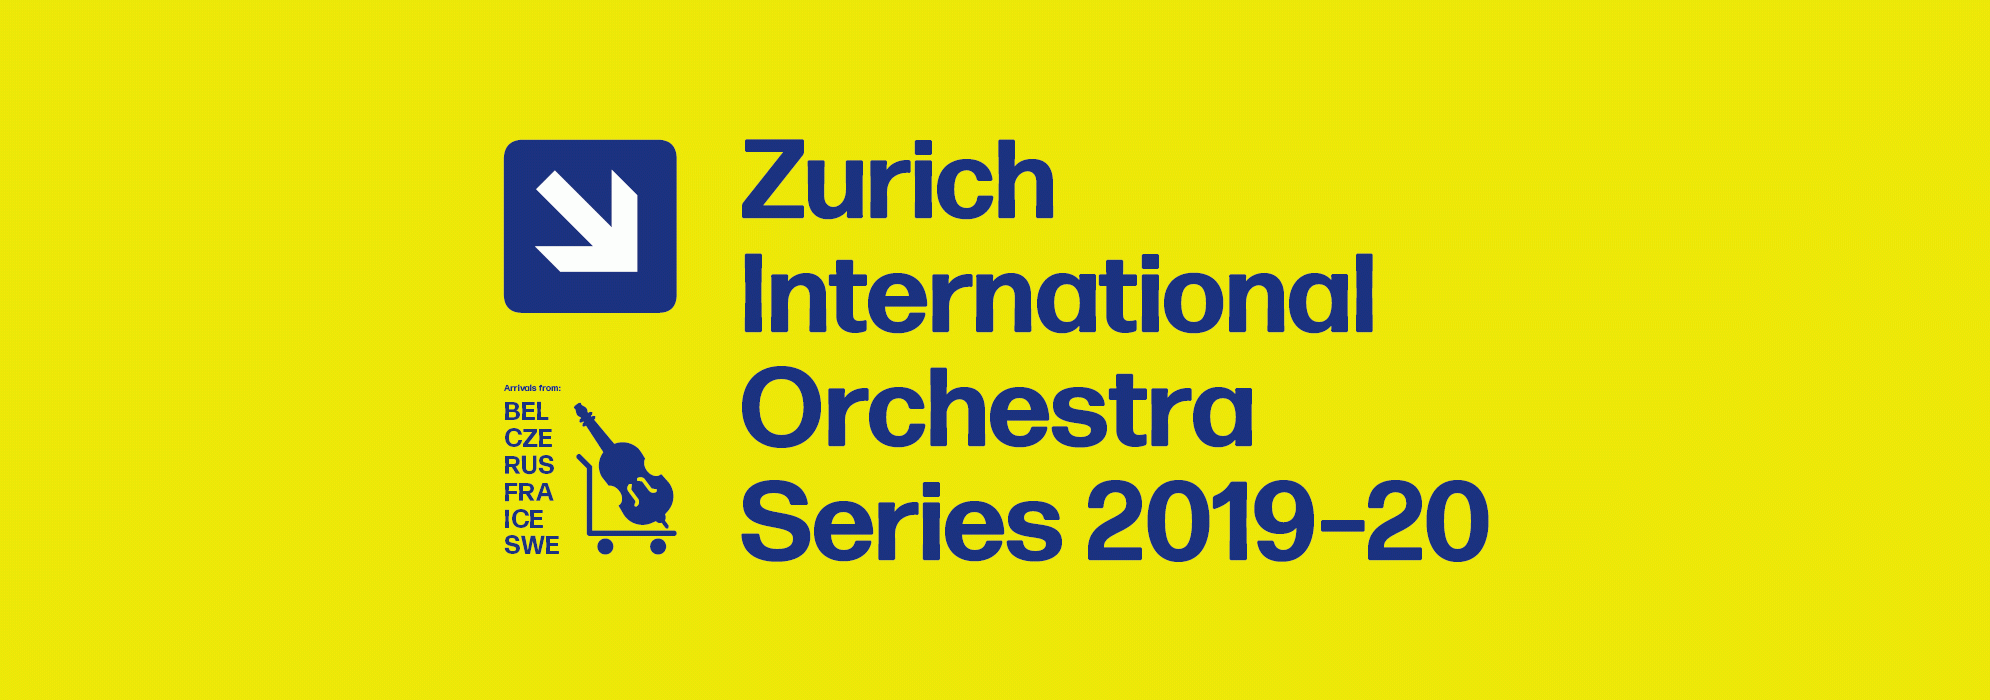 Zurich International Orchestra Series 2019-20